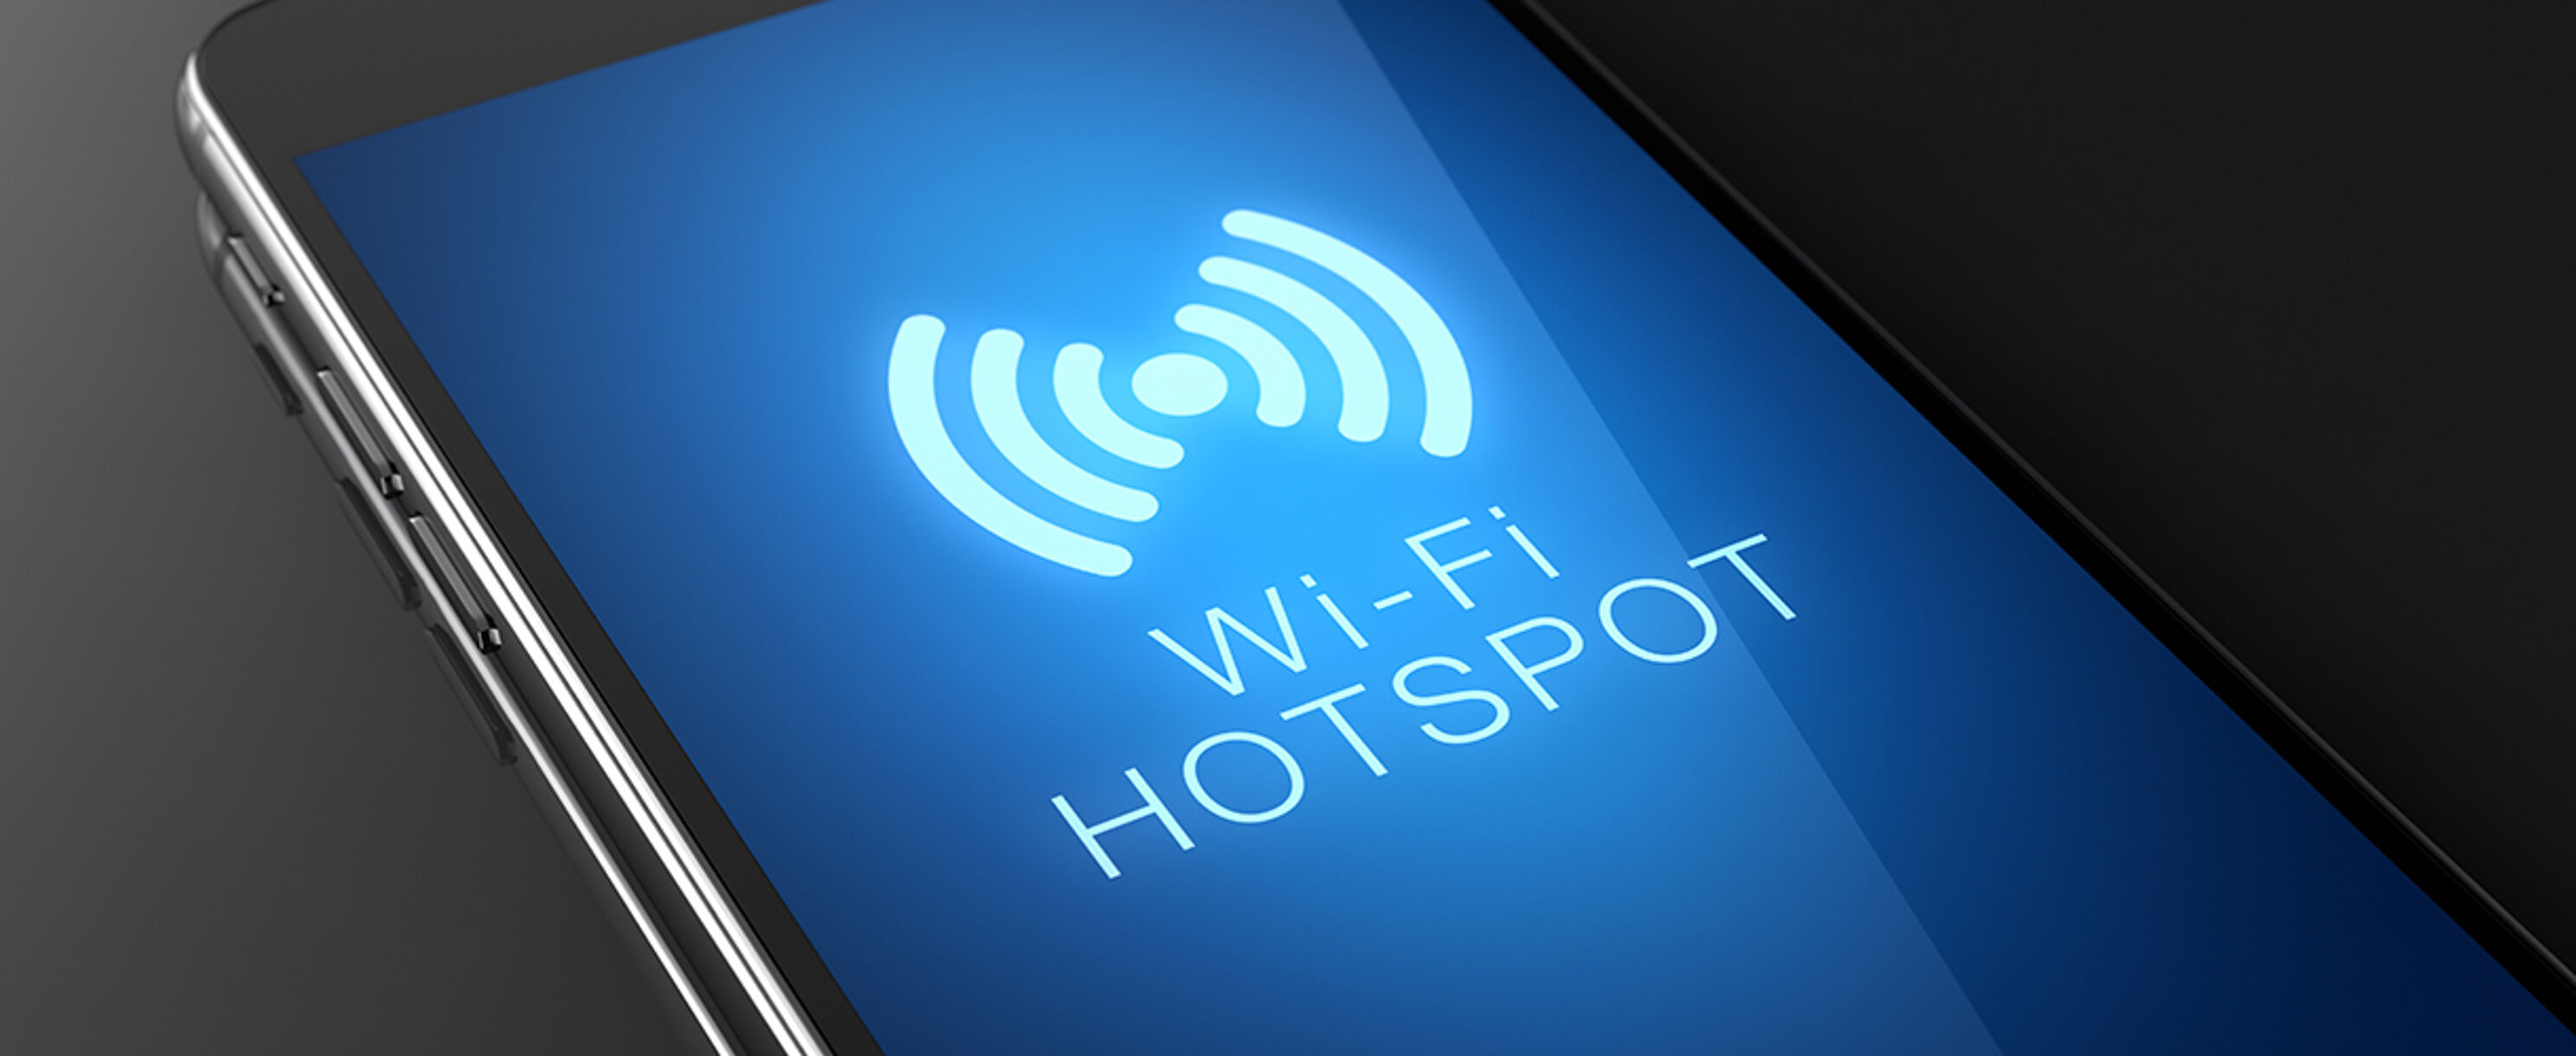 Mobiles Internet kannst du mit dem Smartphone als WLAN-Hotspot nutzen